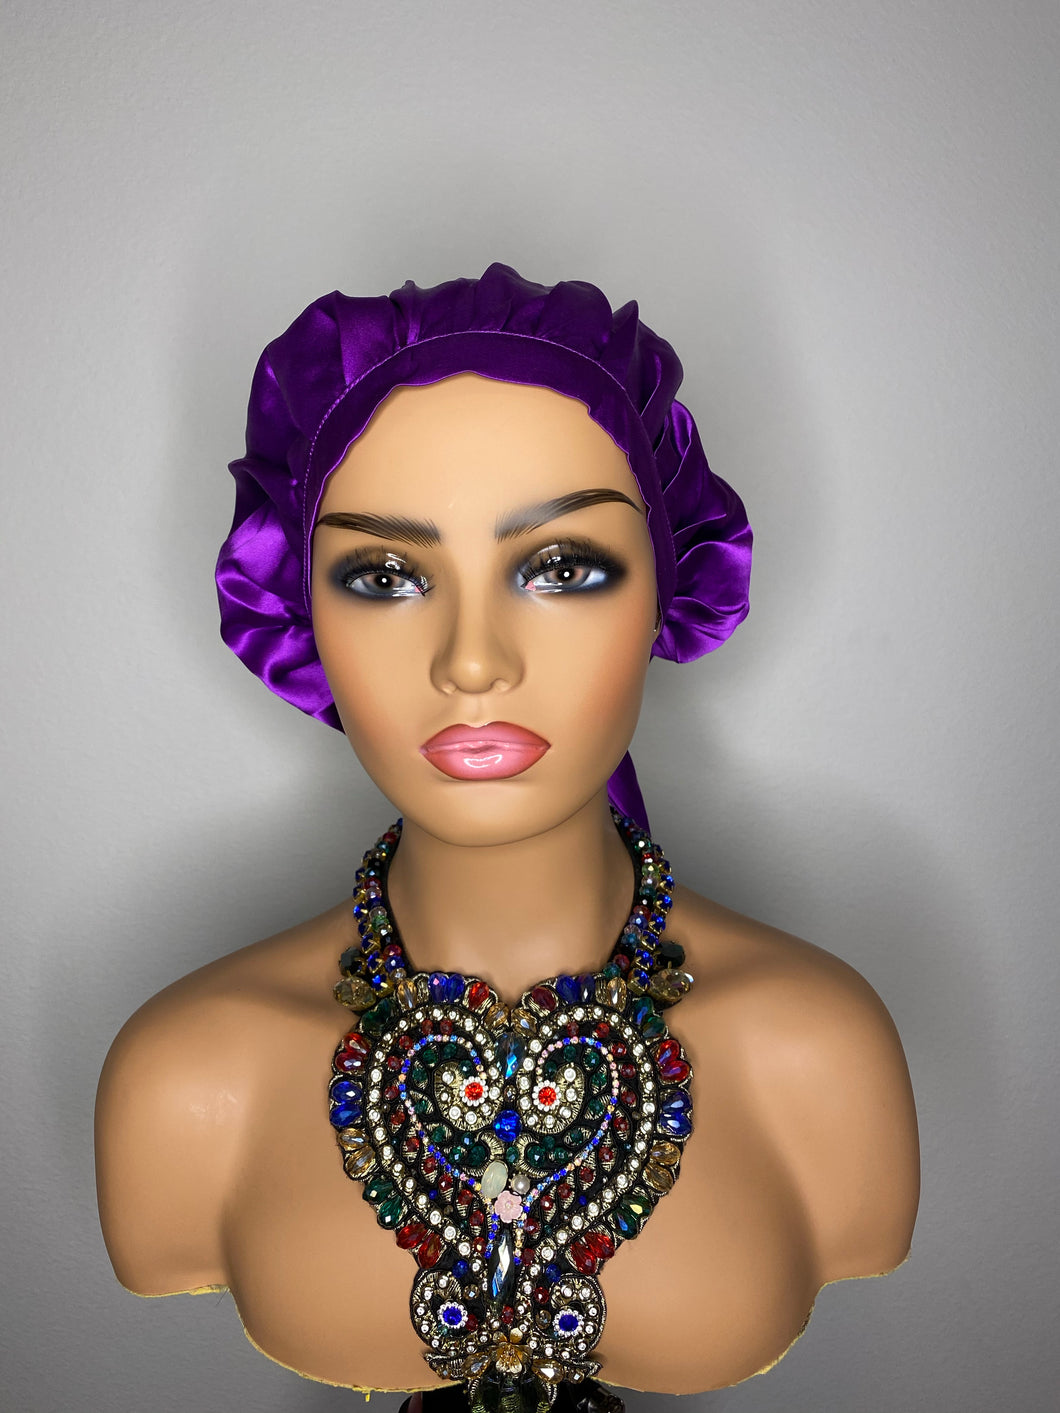 100% Silk Hair Bonnet- Purple Rain